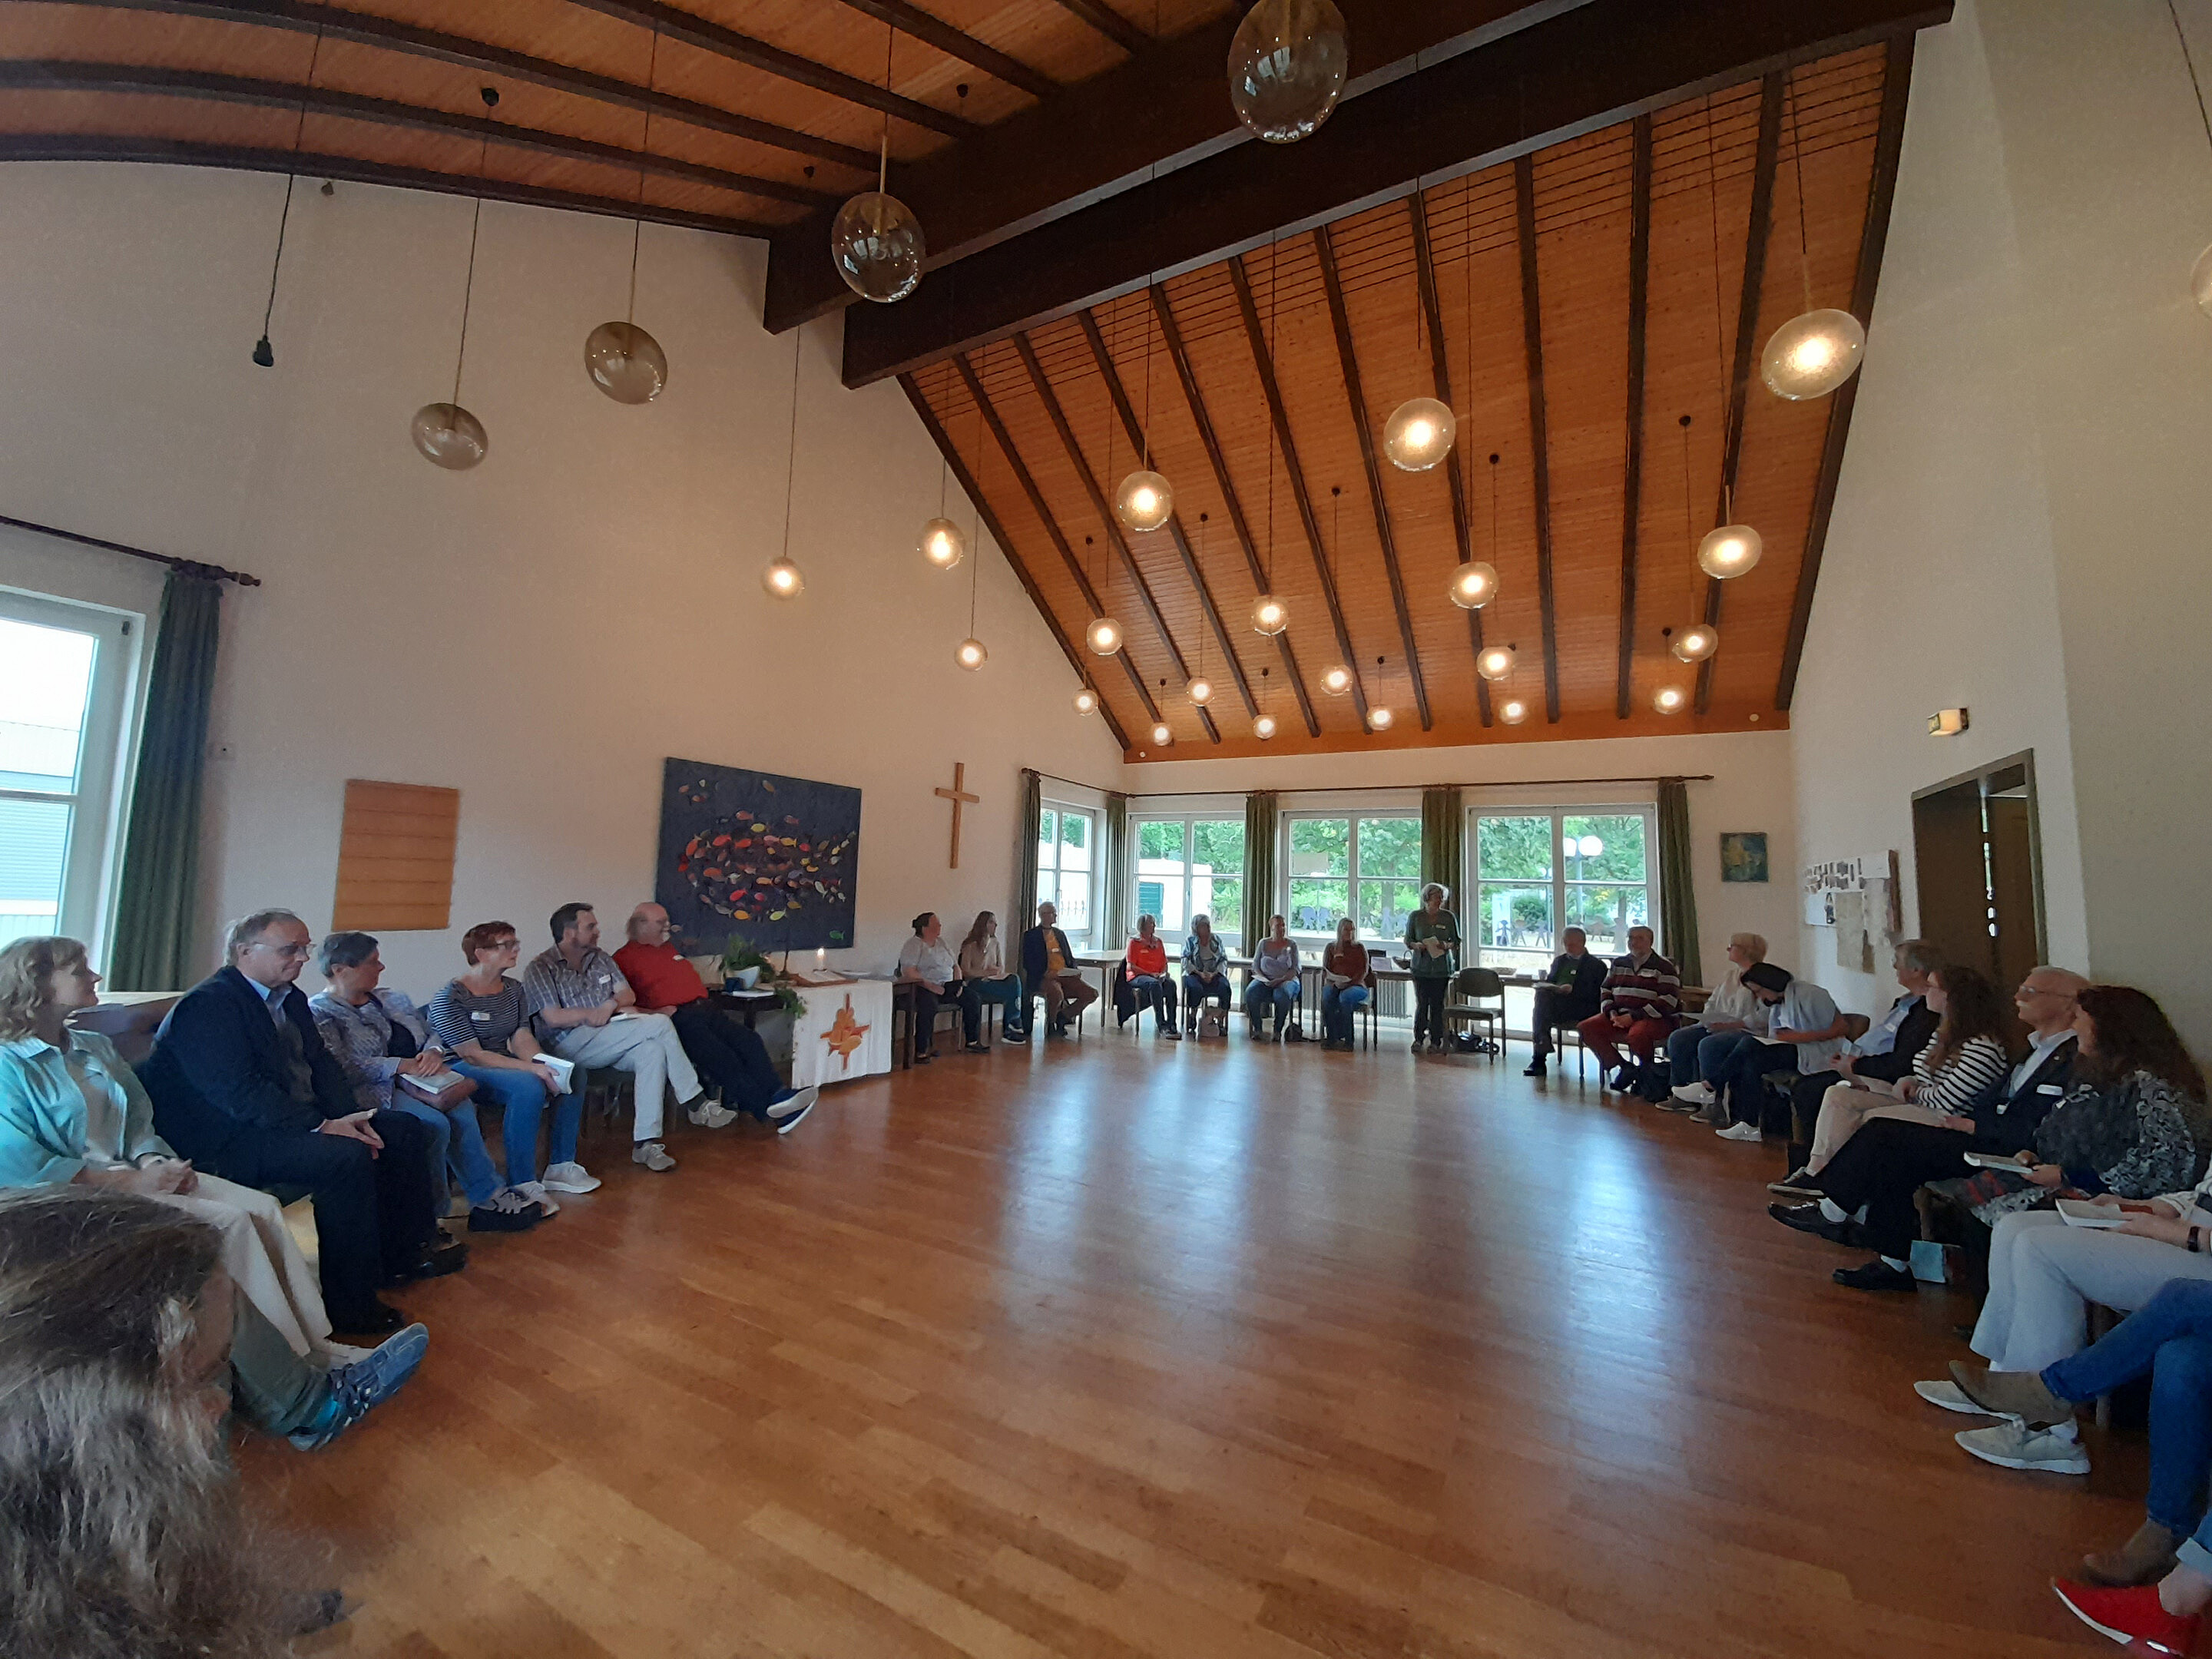 Menschen bilden große Sitzrunde im Gemeindesaal: Im Dietrich-Bonhoeffer-Haus in Mechernich trafen Haupt- und Ehrenamtliche der Gemeinde sich am Samstag mit ihren Besuchern.